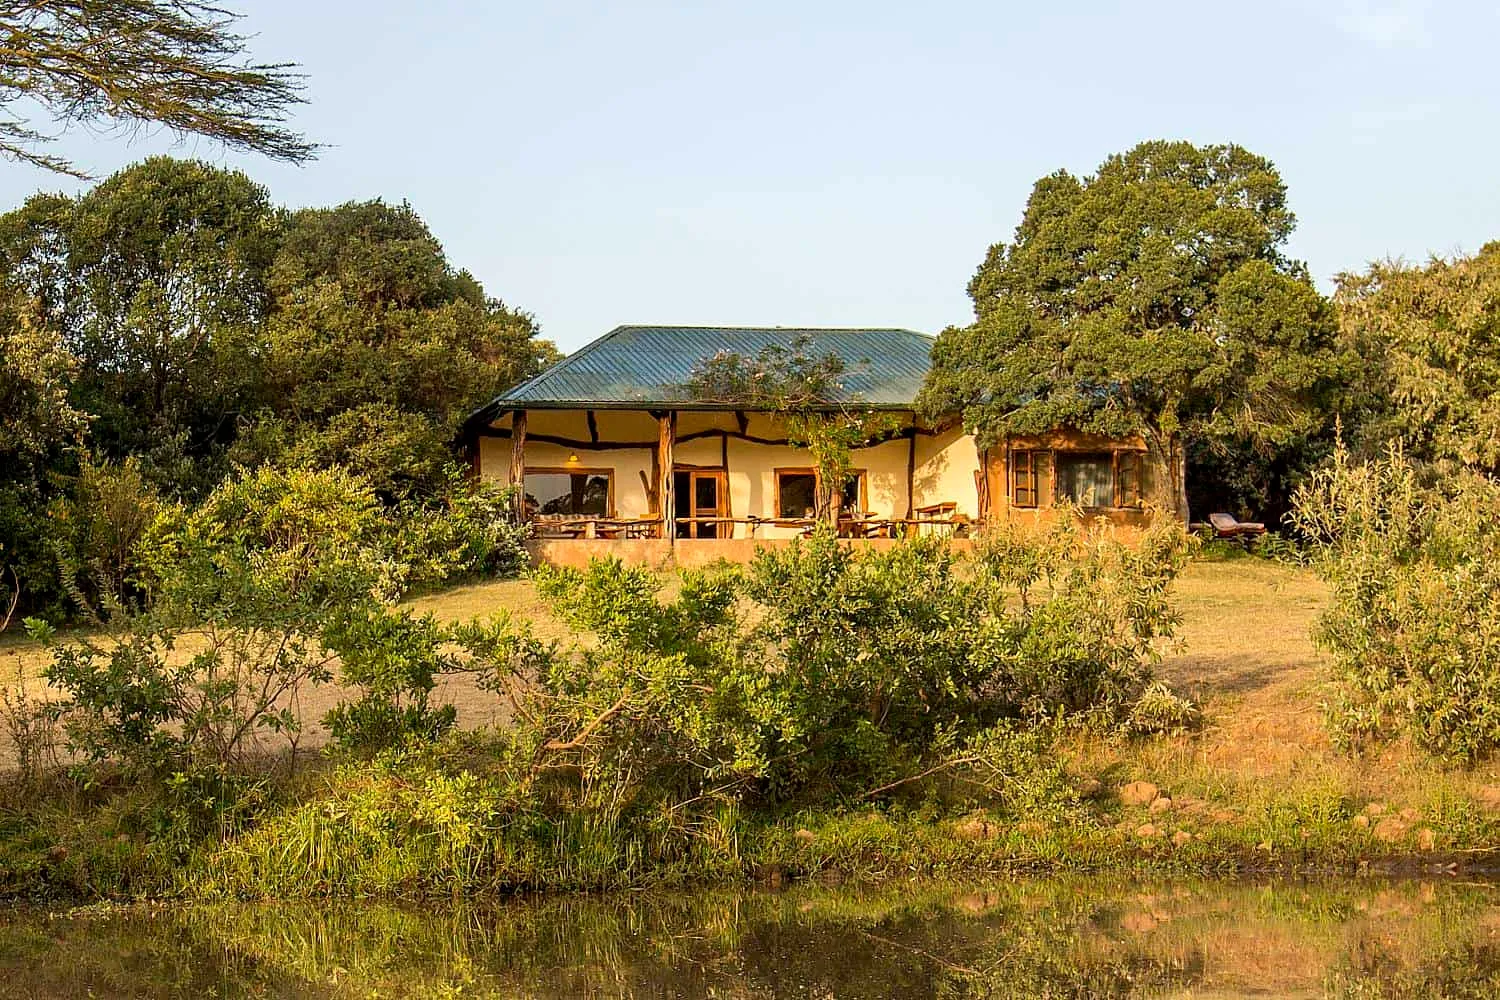 Mara house in Kenya